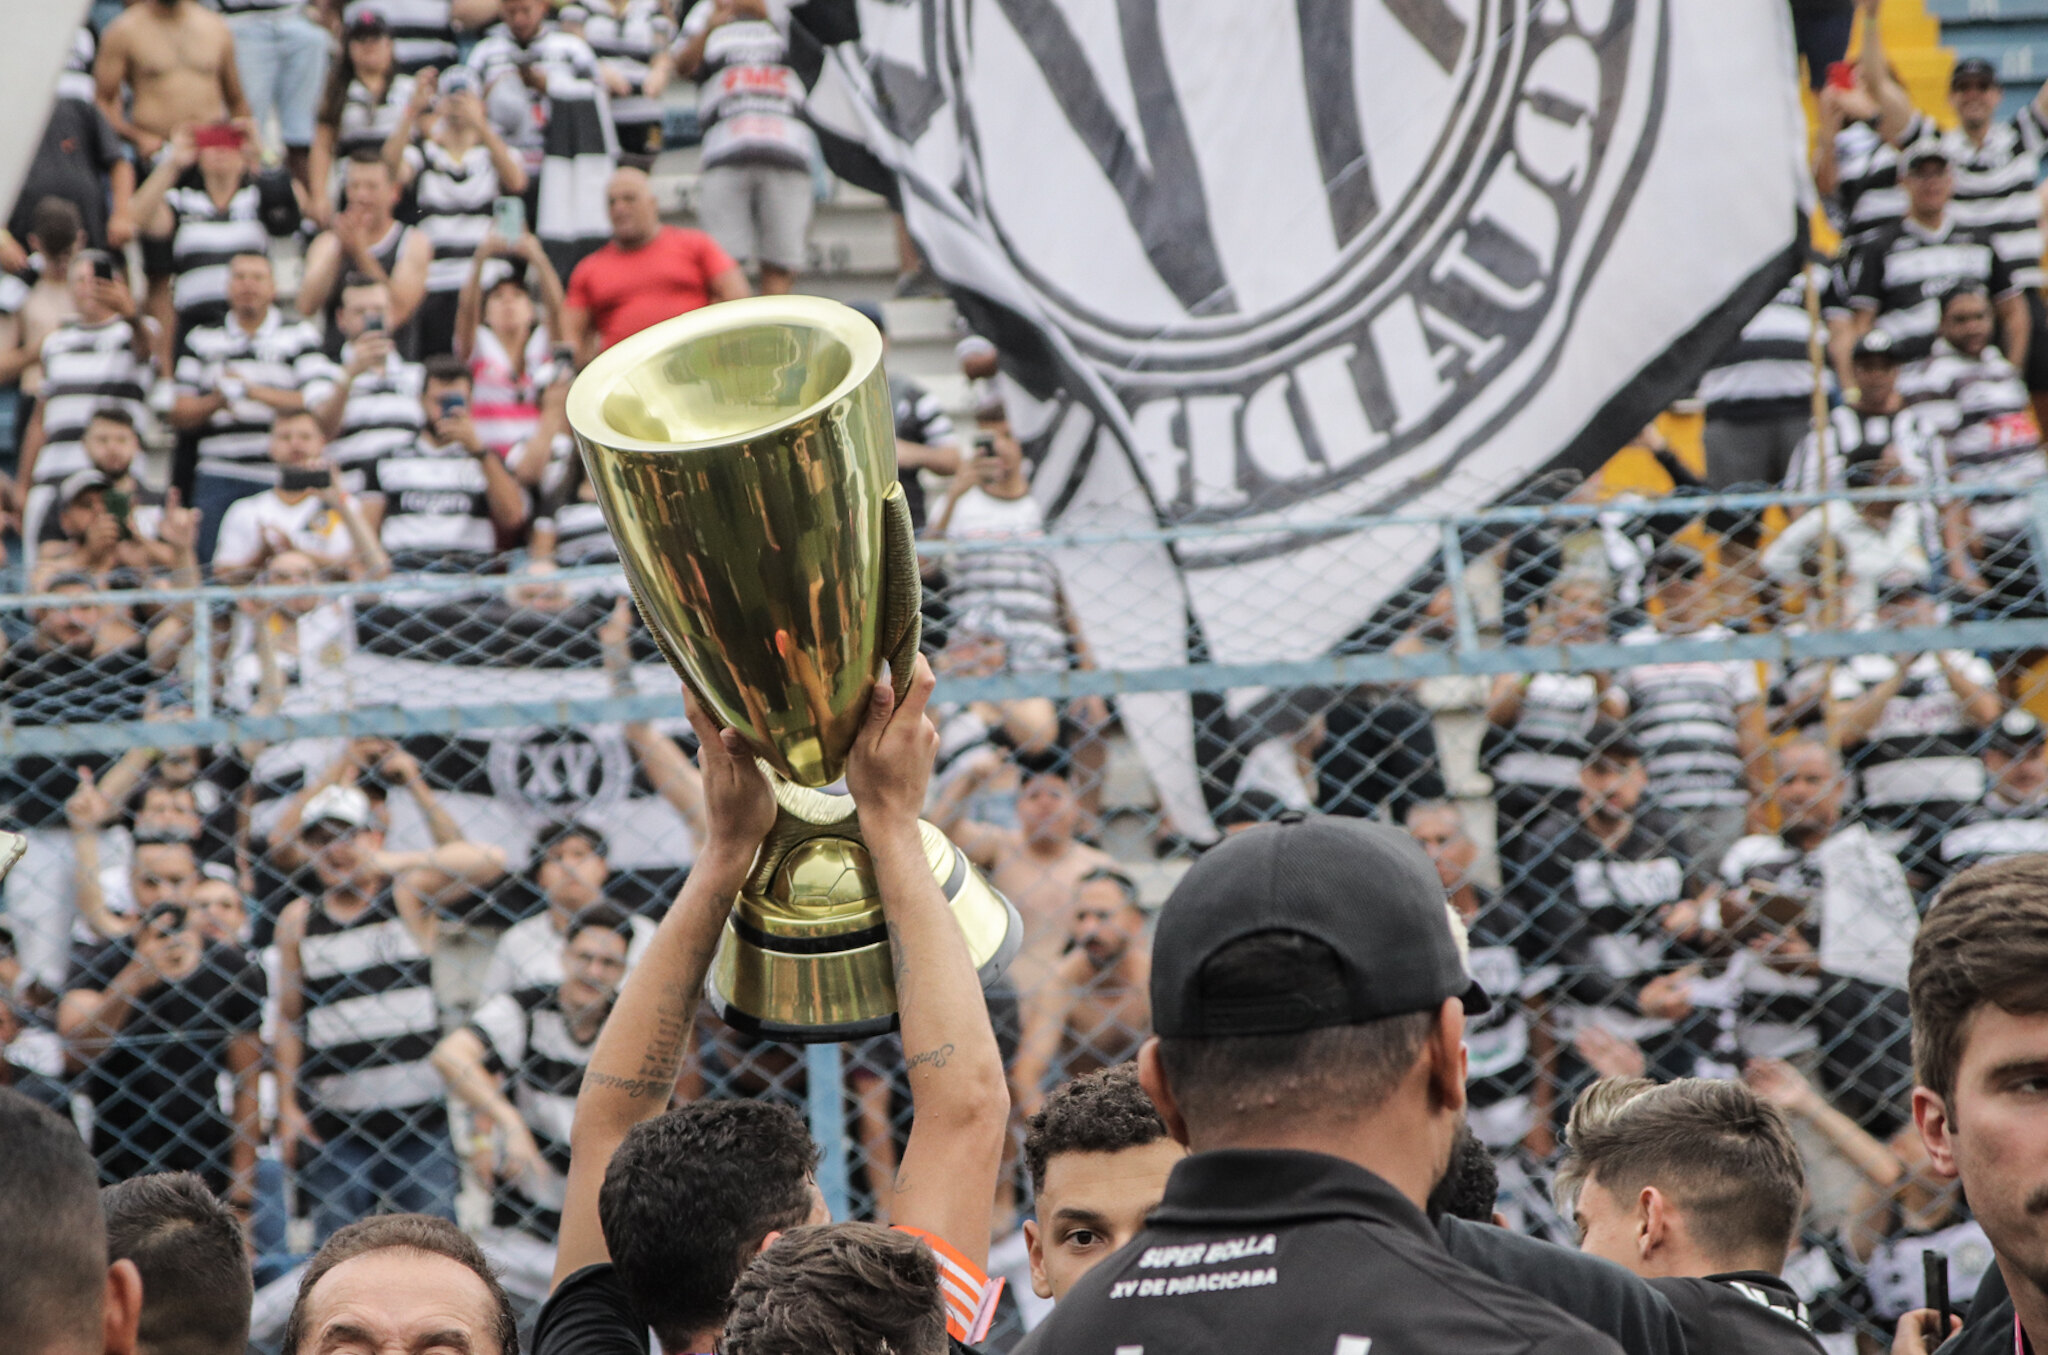 Vai começar a Copa Paulista, tradição do interior do estado 